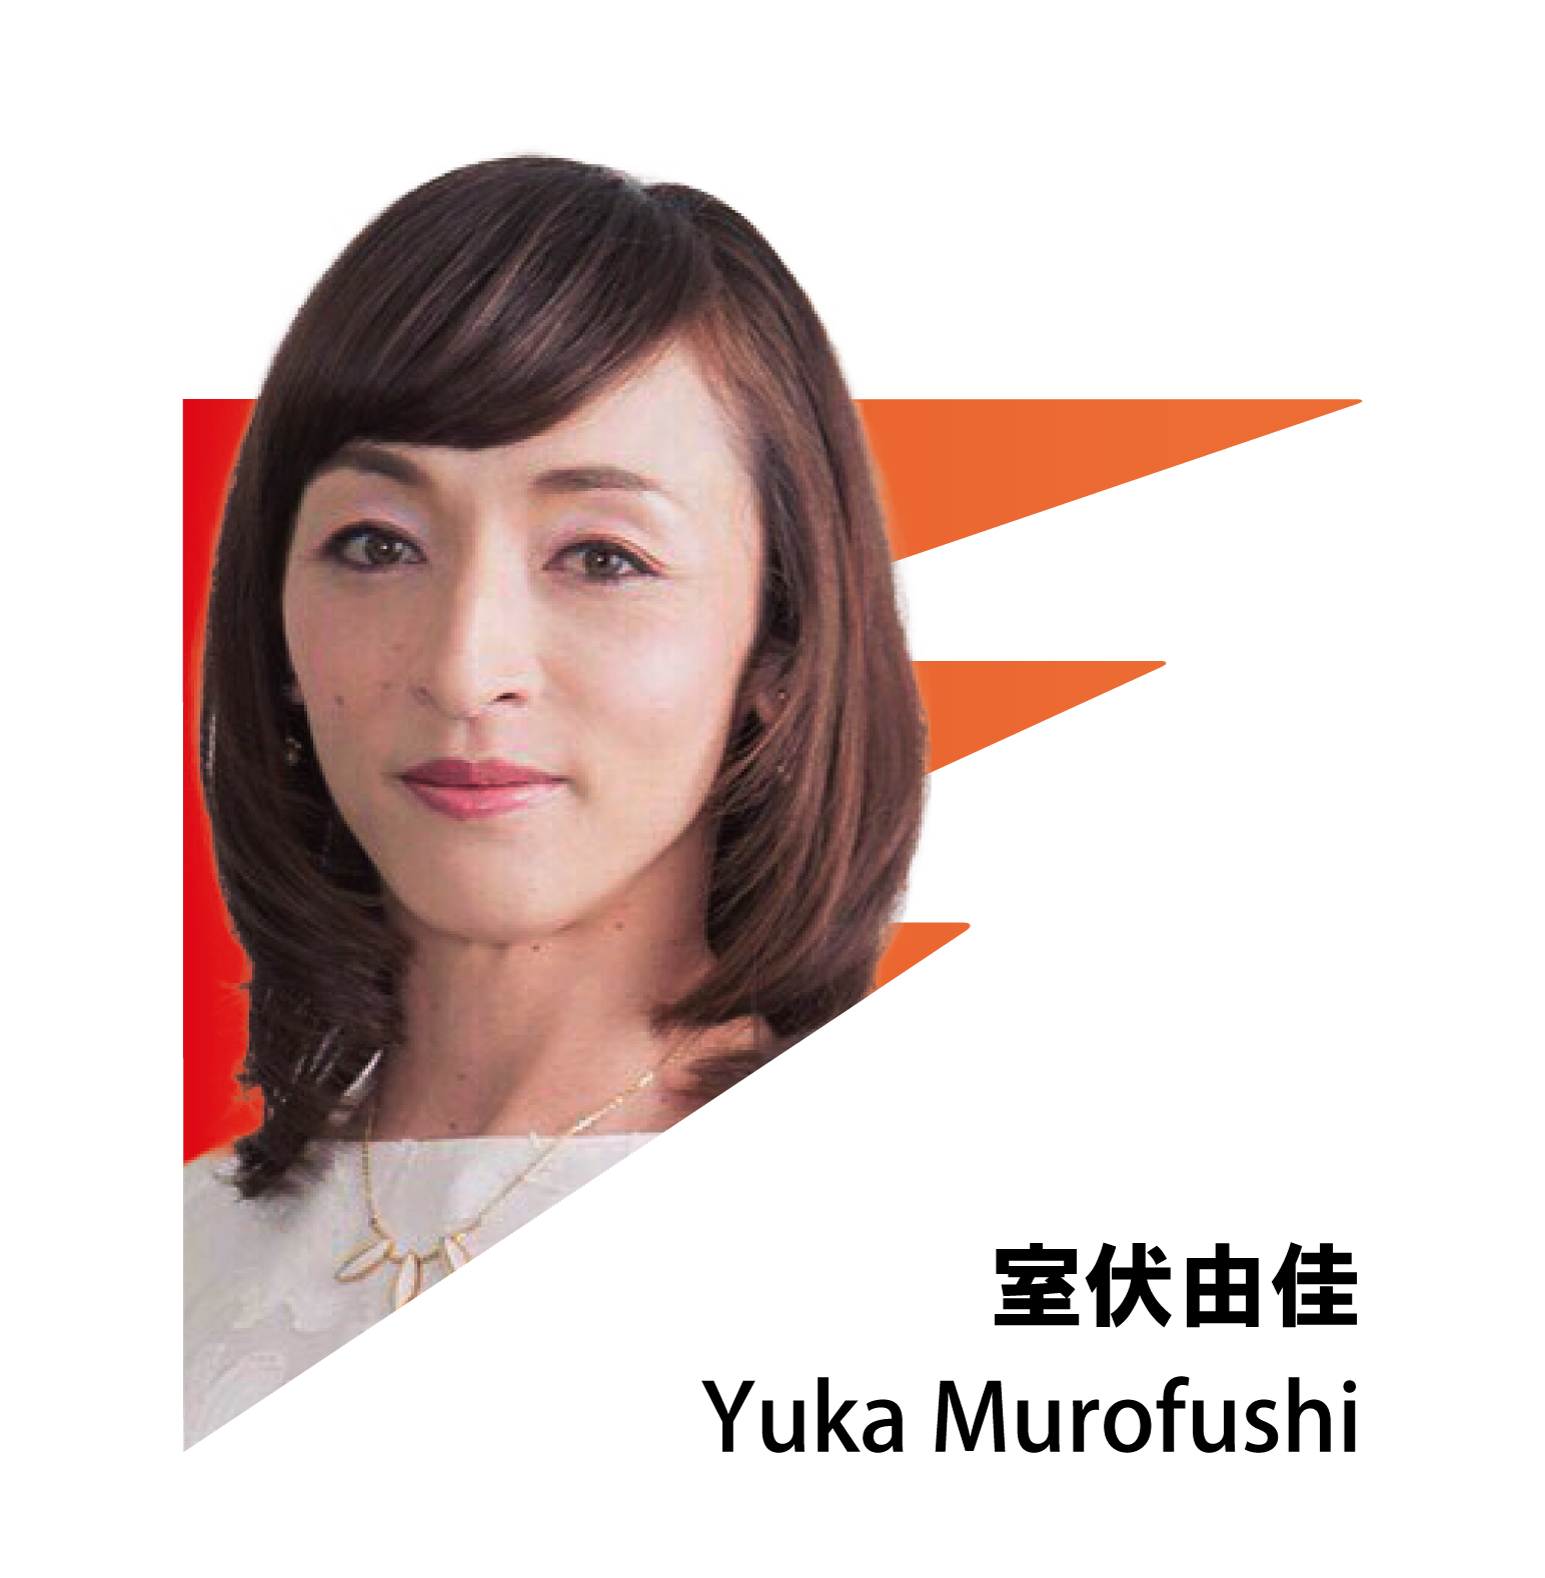 YUKA MUROFUSHI